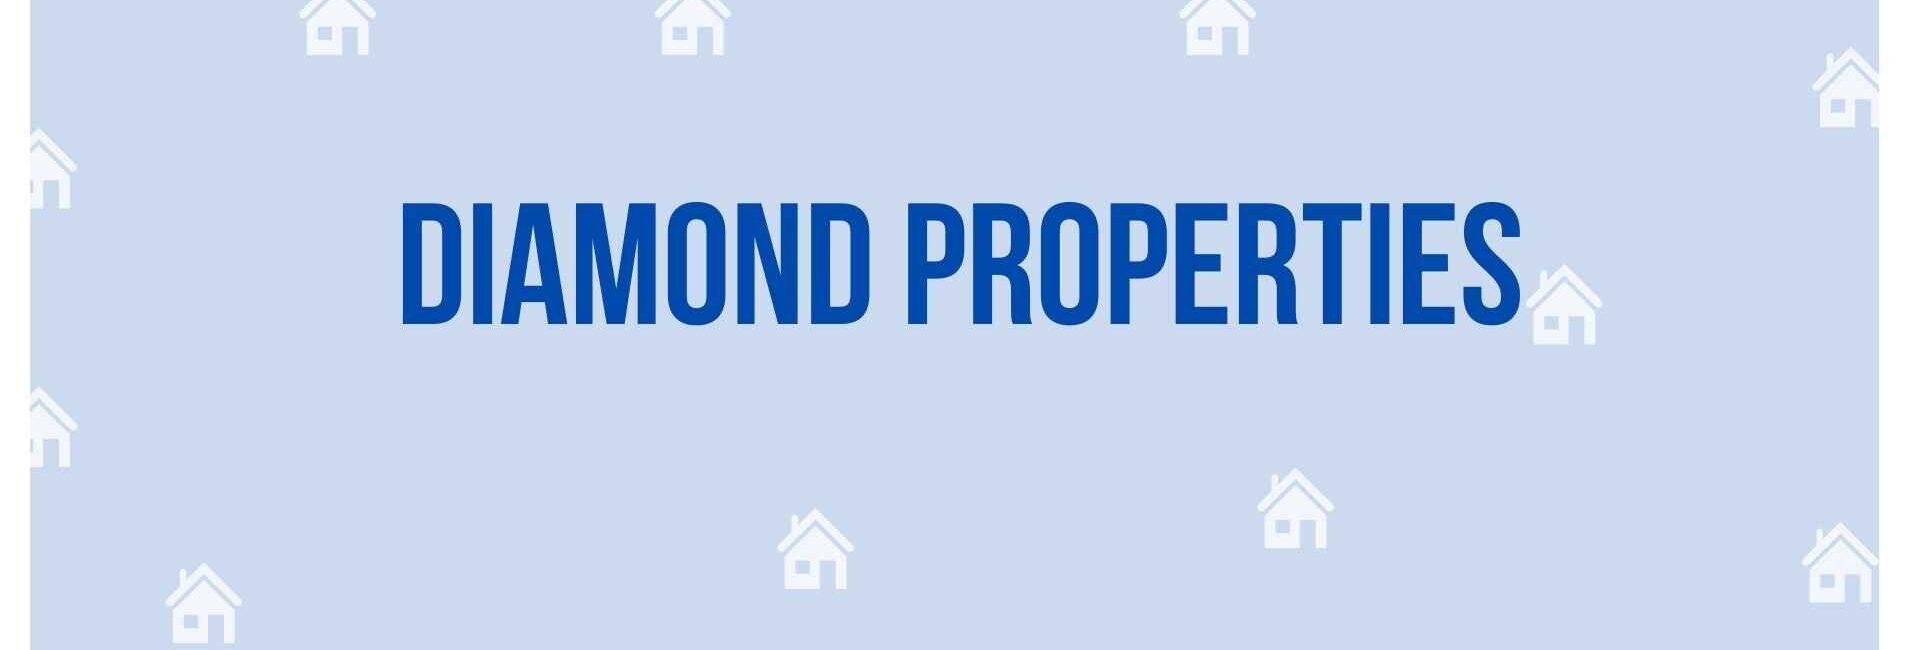 Diamond Properties - Property Dealer in Noida